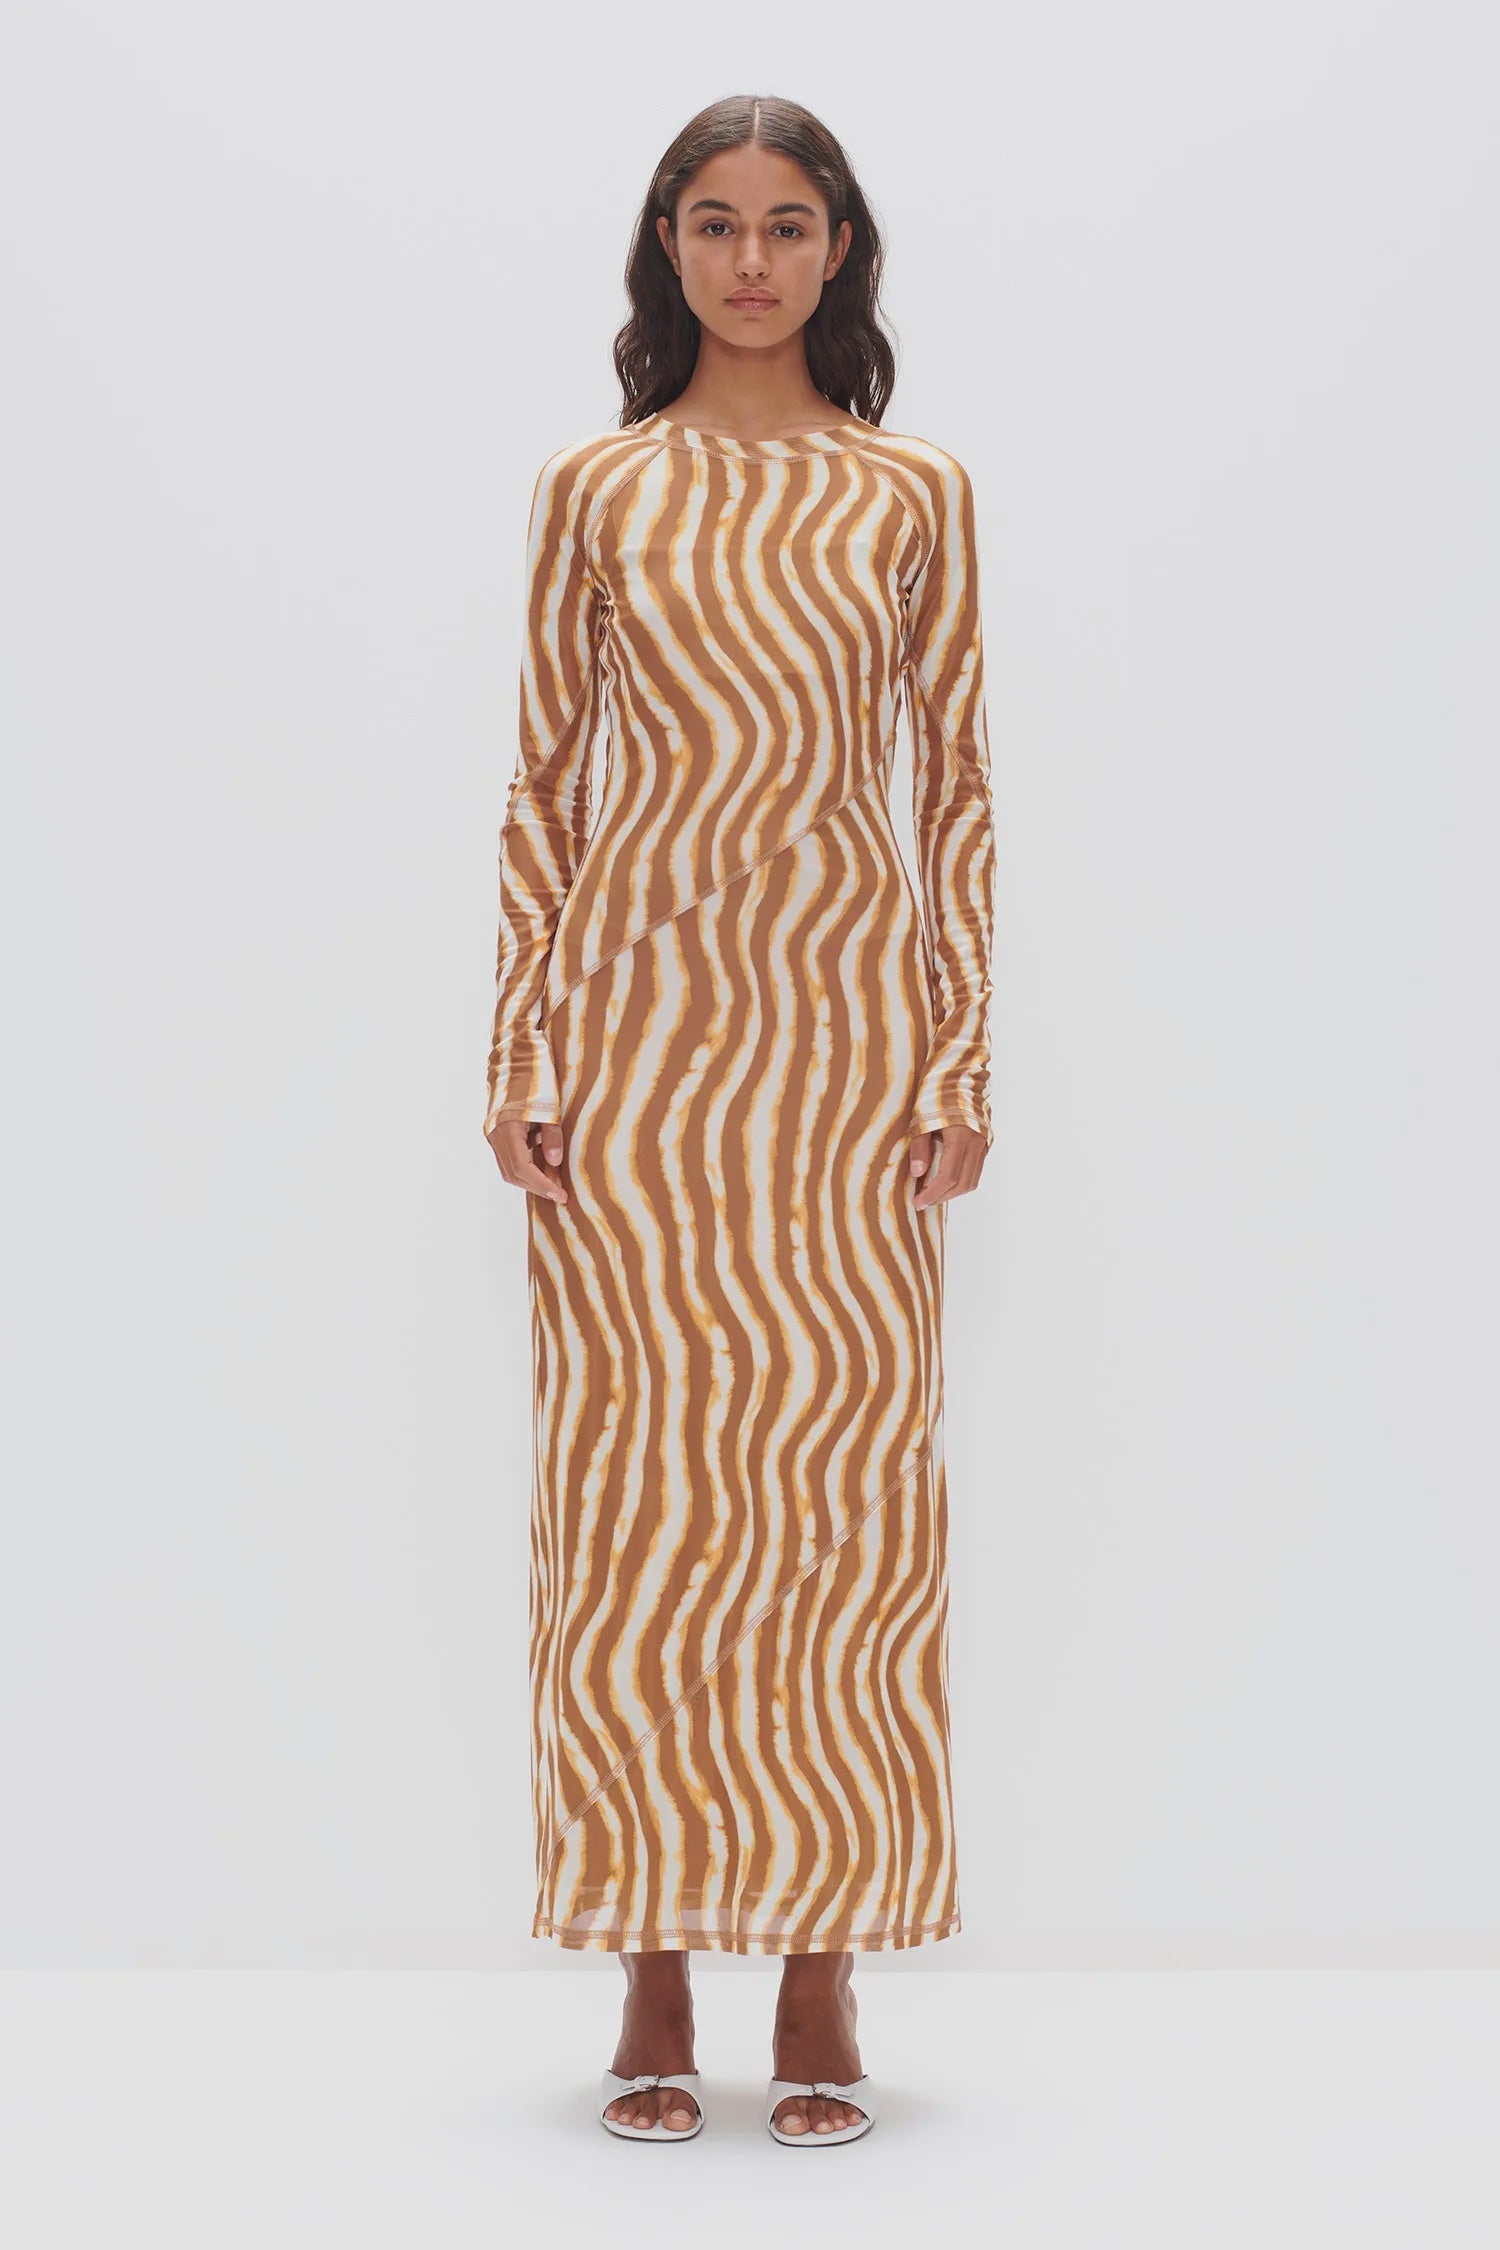 Ownley | Carla Long Sleeve Dress - Tie Dye Stripe